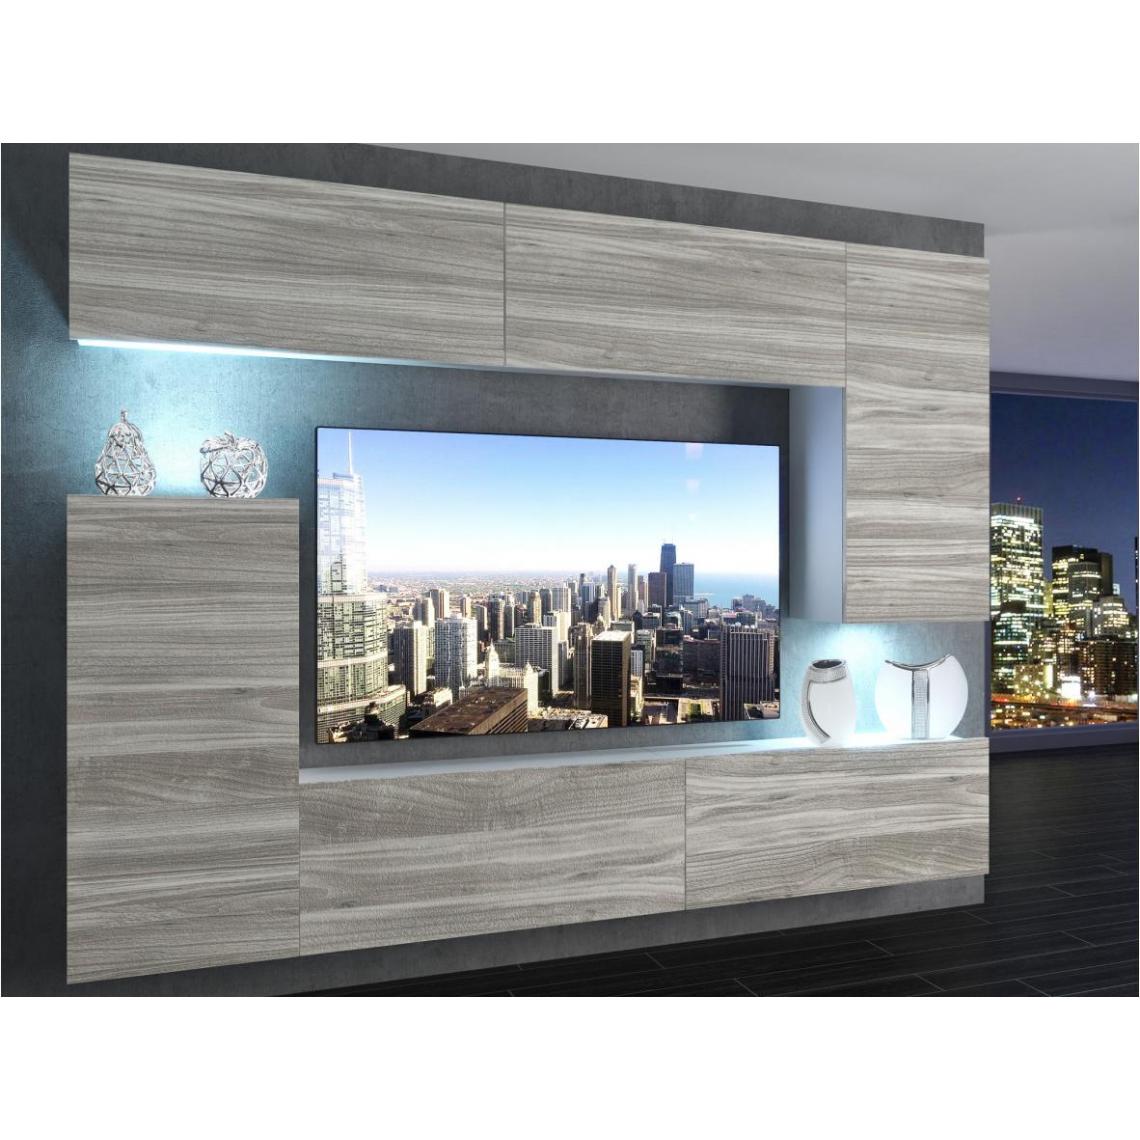 Hucoco - SLIDE - Ensemble meubles TV + LED - Unité murale moderne - Largeur 250 cm - Mur TV à suspendre - Aspect bois - Bois - Meubles TV, Hi-Fi